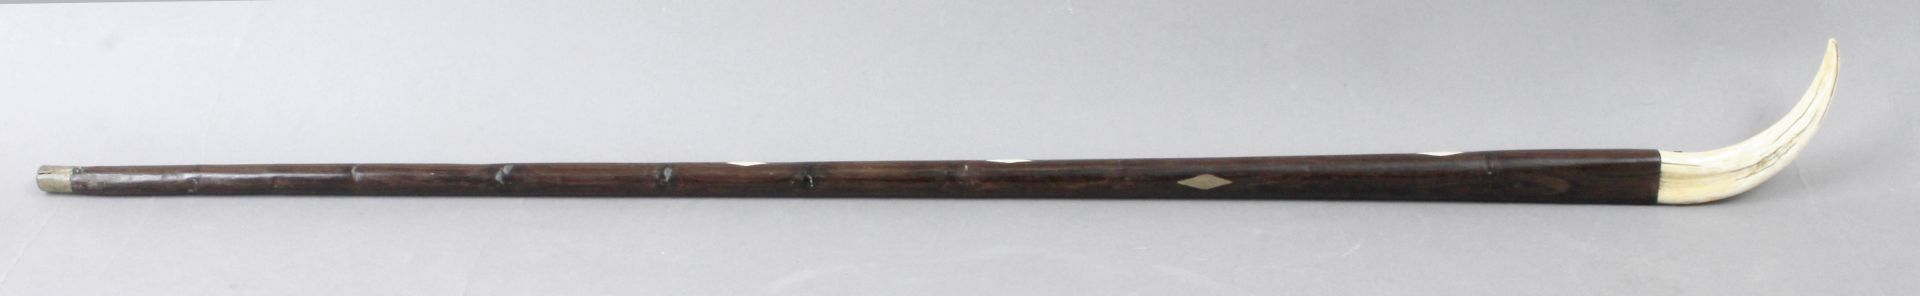 A 19th century walking stick - Bild 2 aus 2